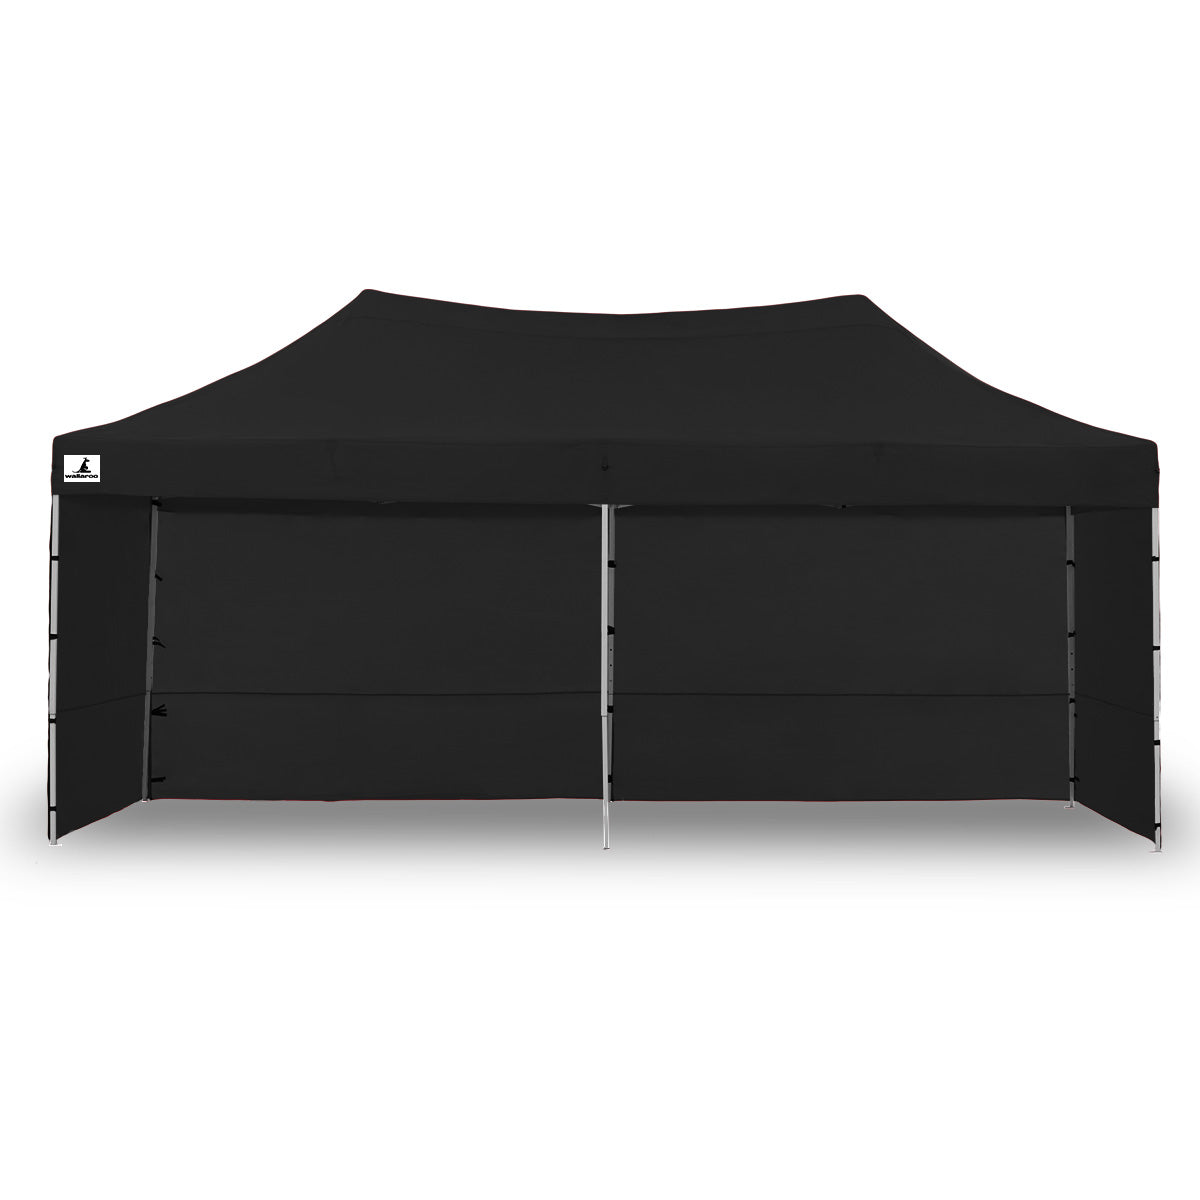 Wallaroo Gazebo Tent Marquee 3x6m PopUp Outdoor Wallaroo Black - 0